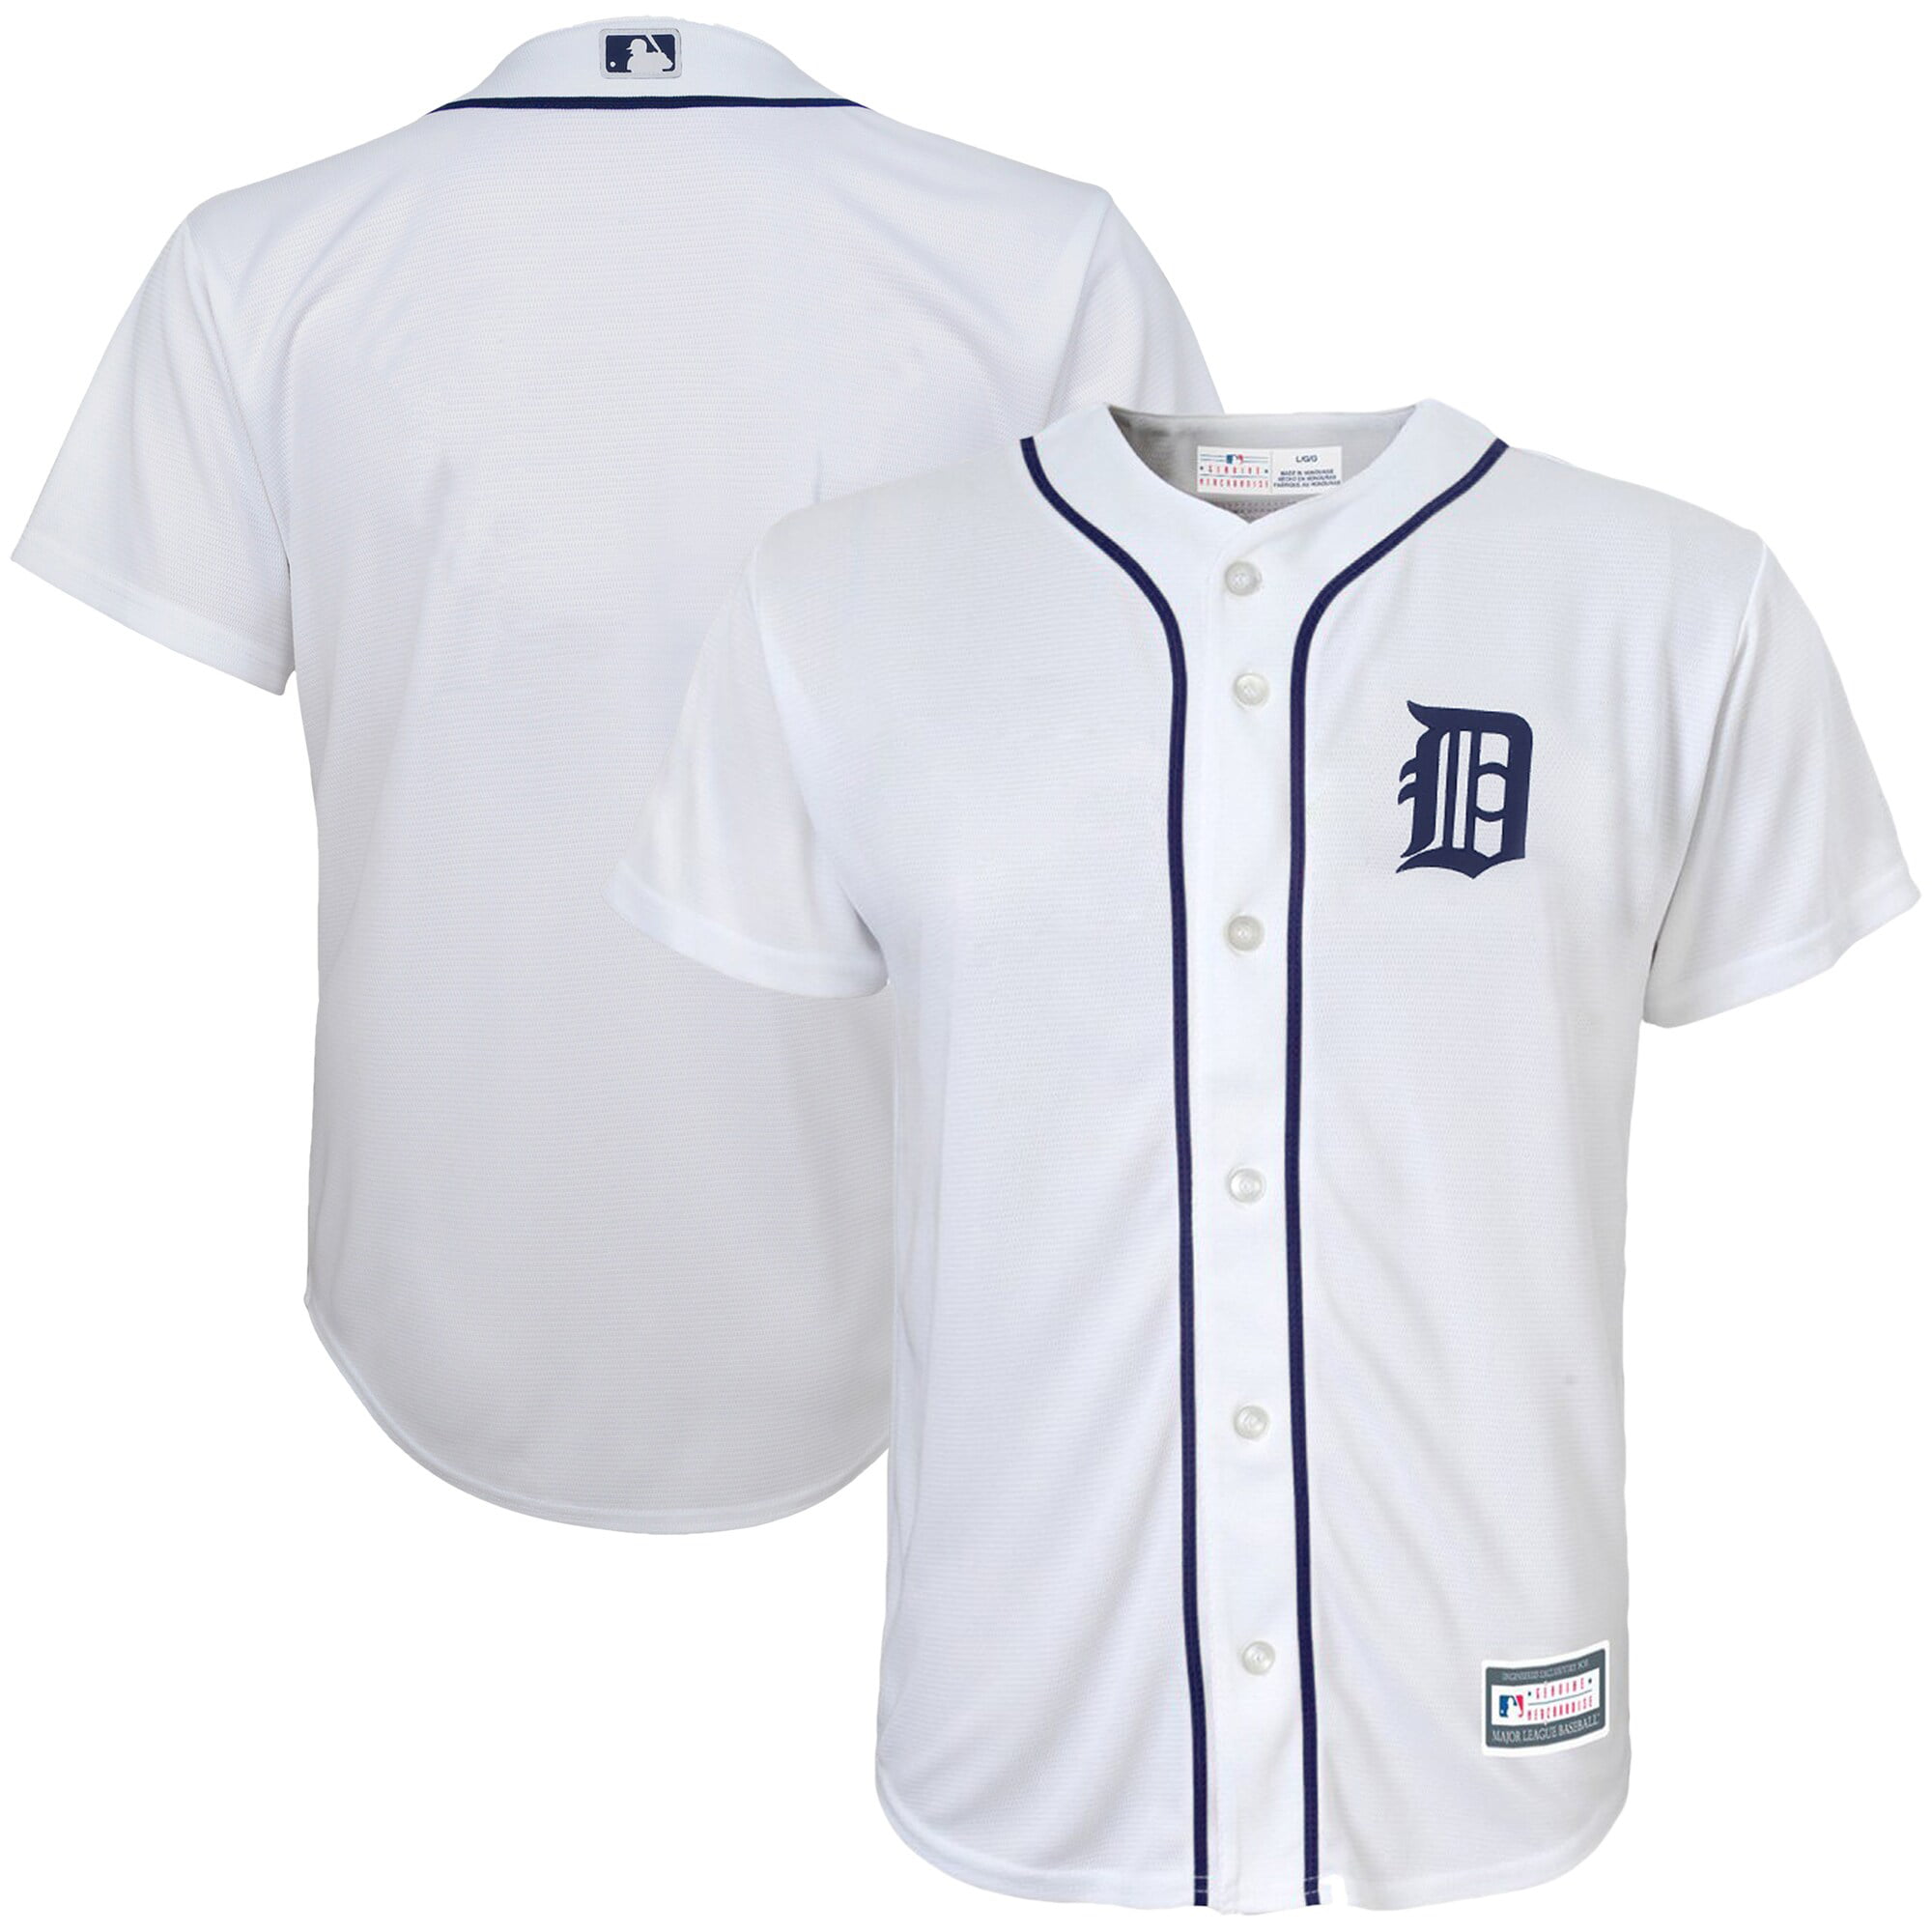 حبوب الحمل Detroit Tigers Youth Replica Blank Team Jersey - White - Walmart.com حبوب الحمل